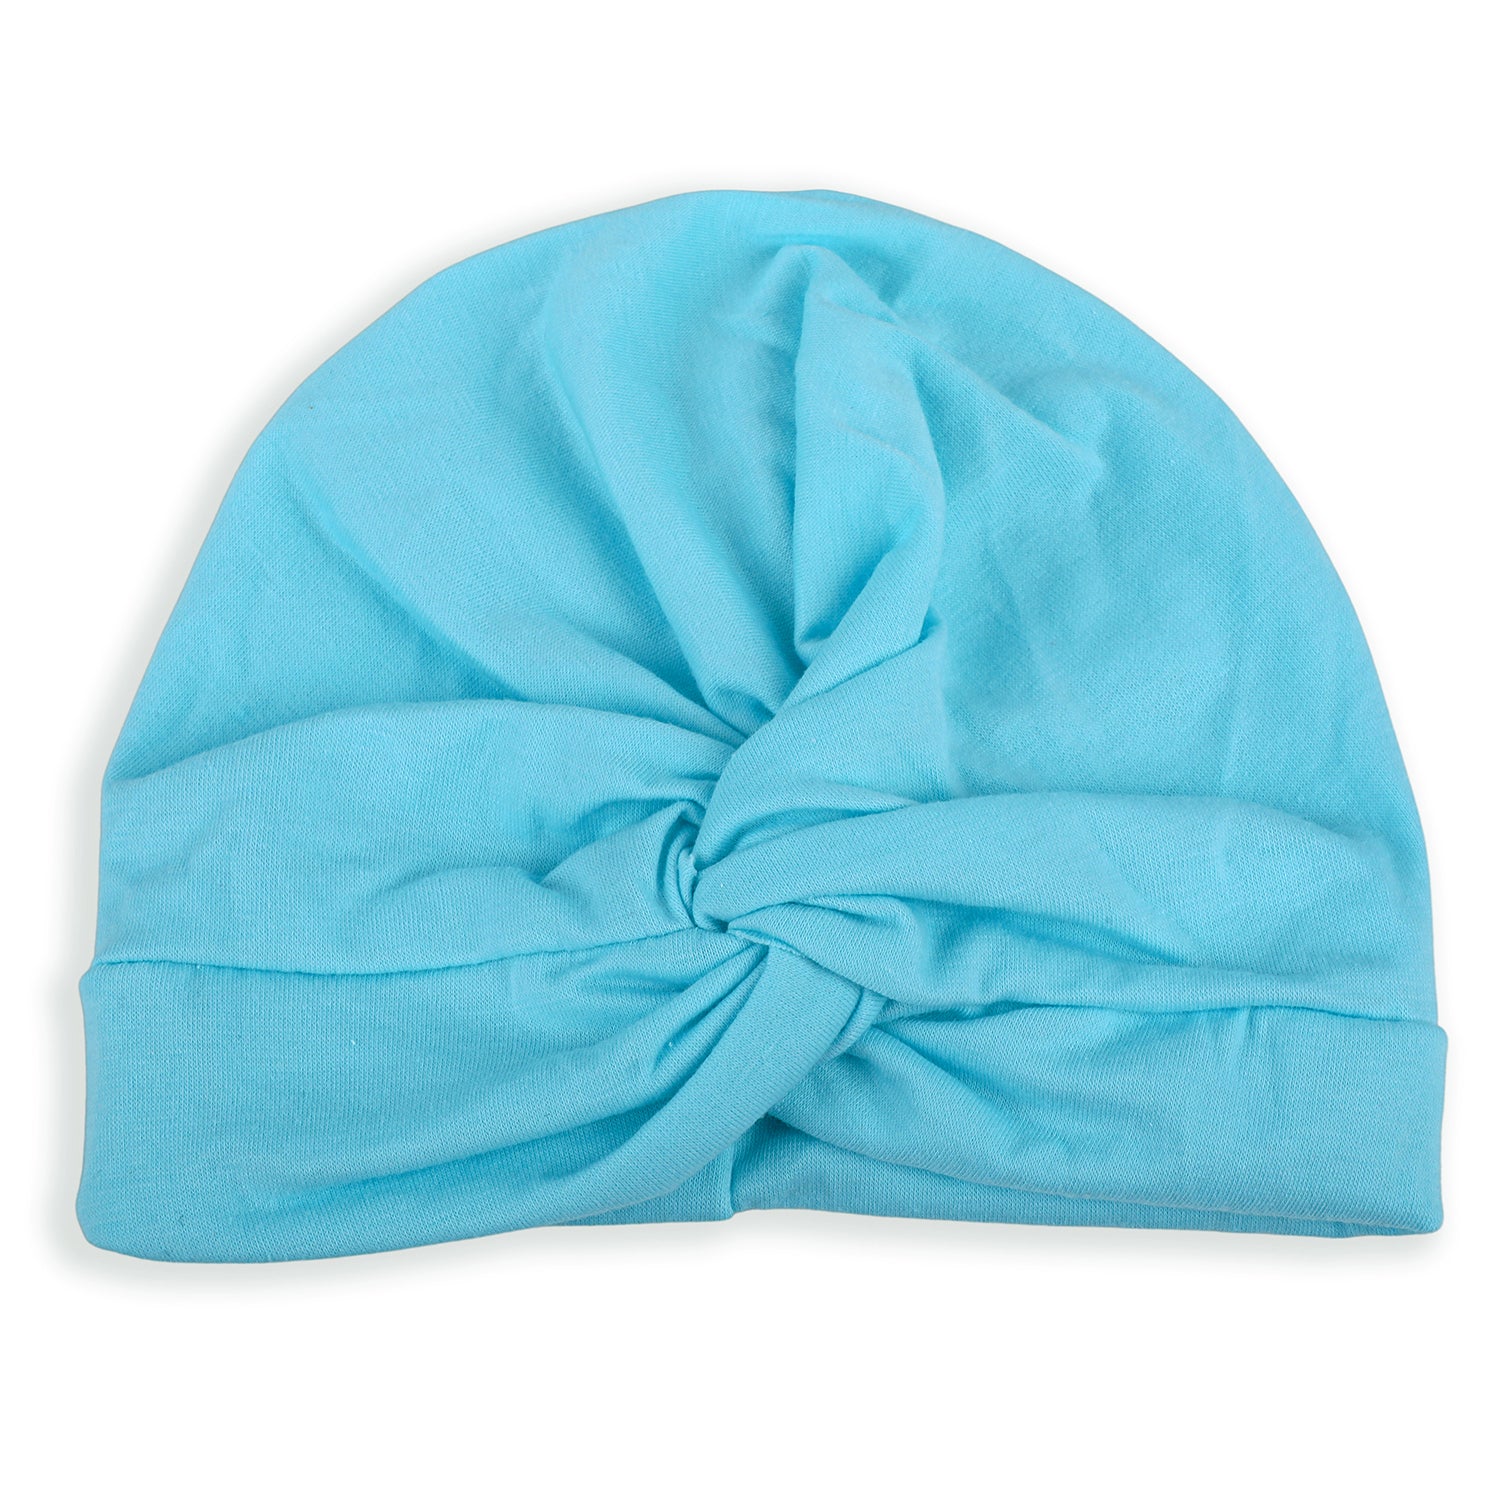 Cute Knotted Turban Cap Infant Beanie - Blue